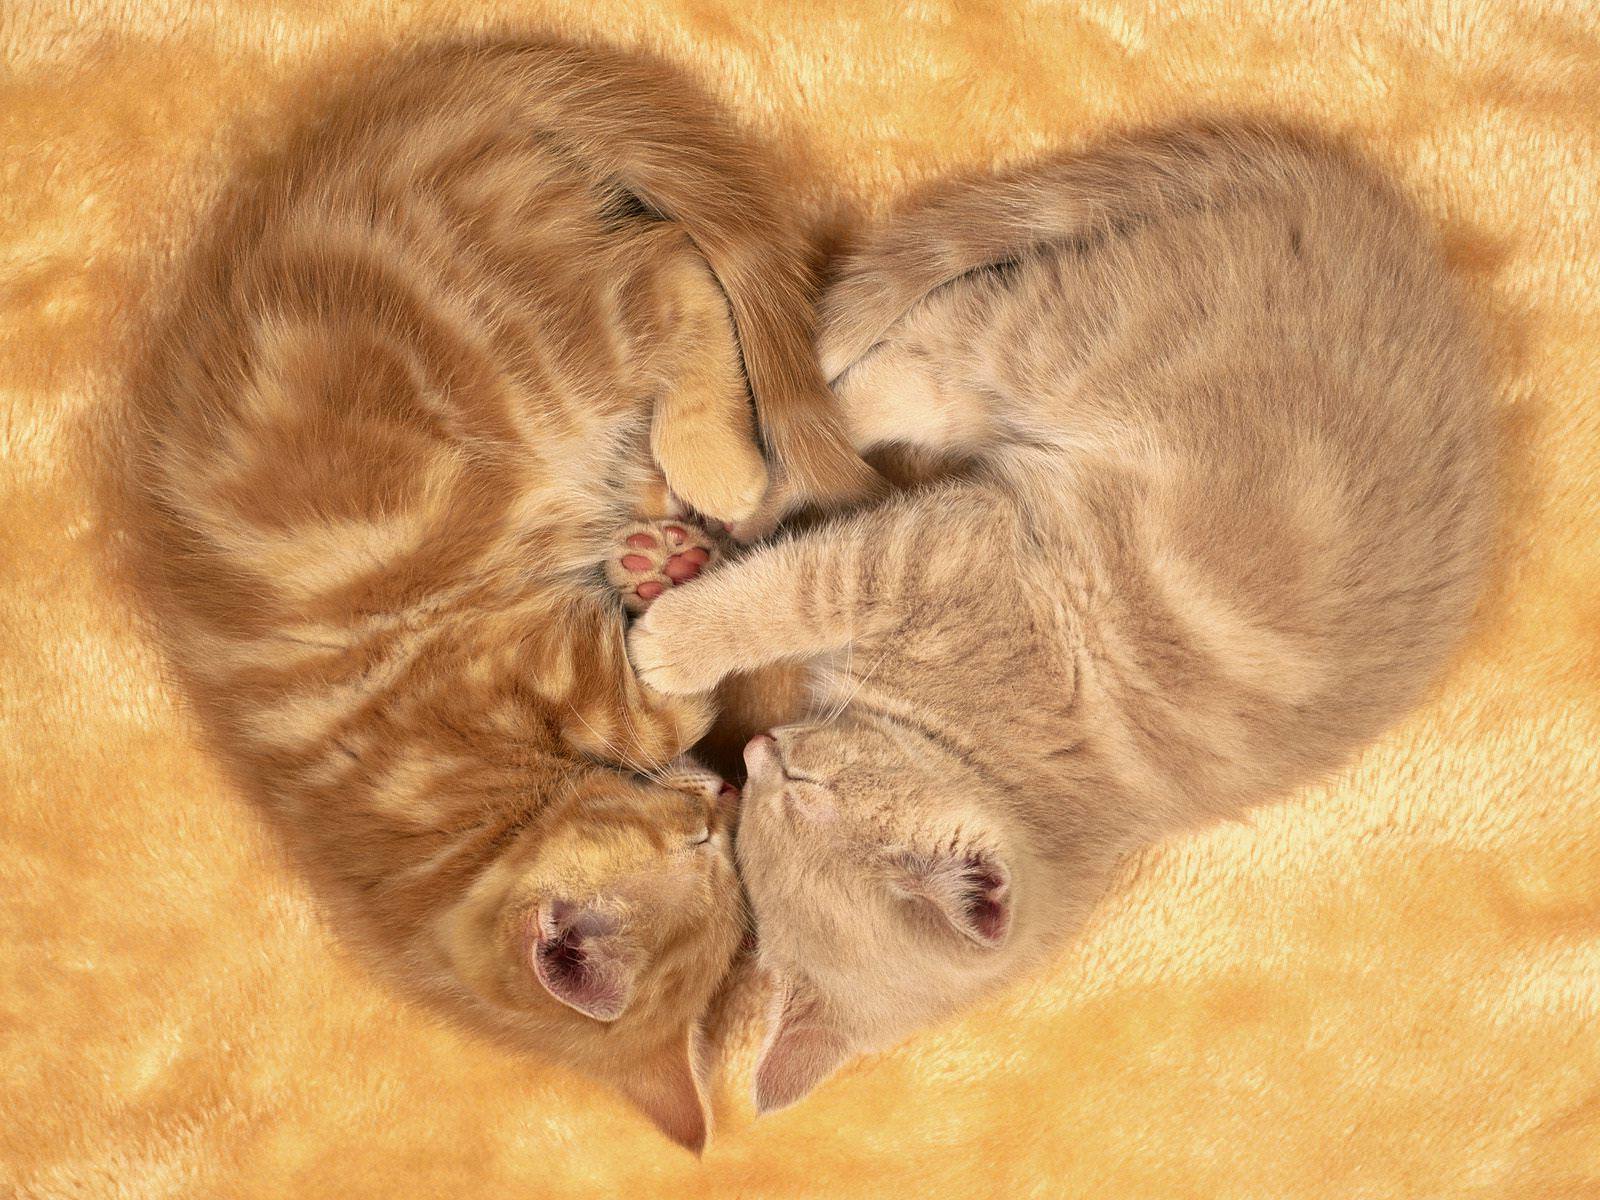 fabulous image of sleeping two cats